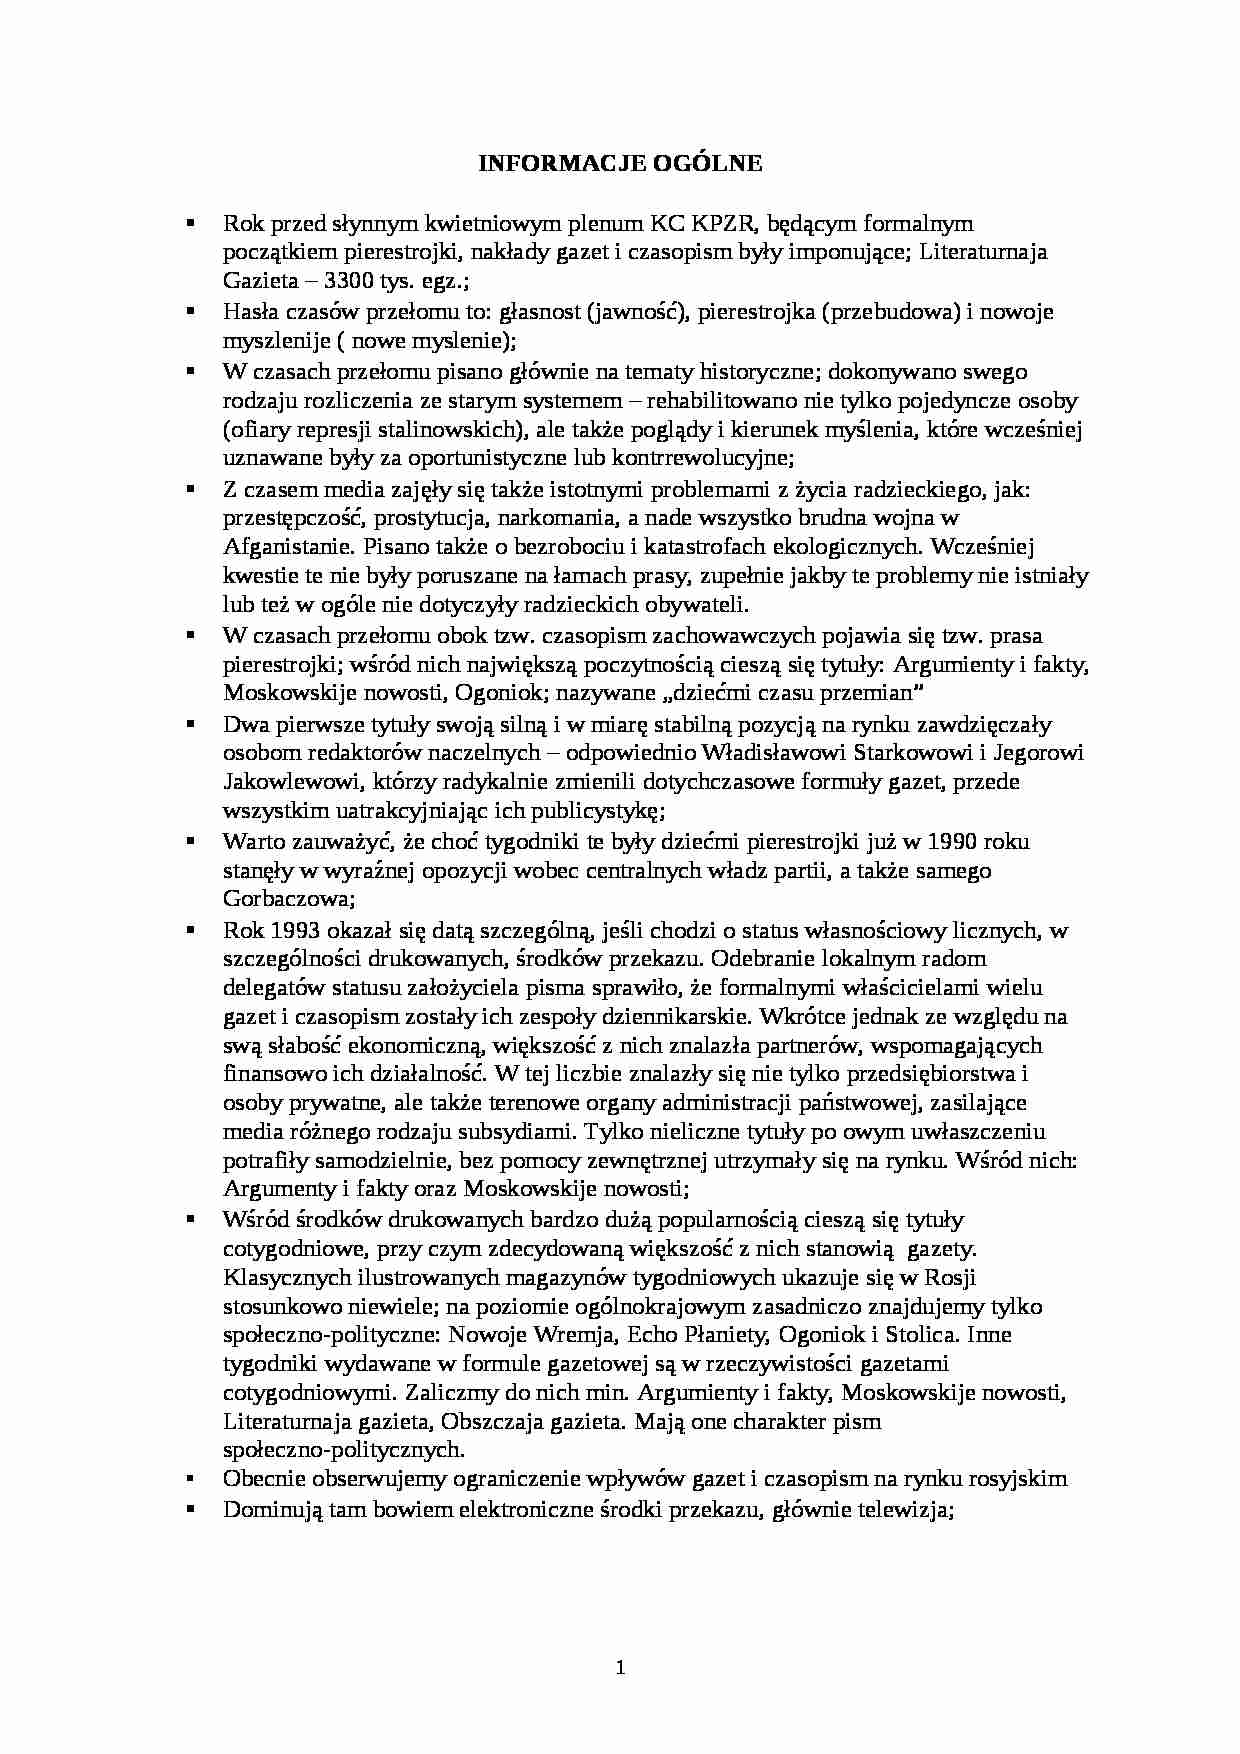 Tygodniki rosyjskie - informacje ogólne - strona 1